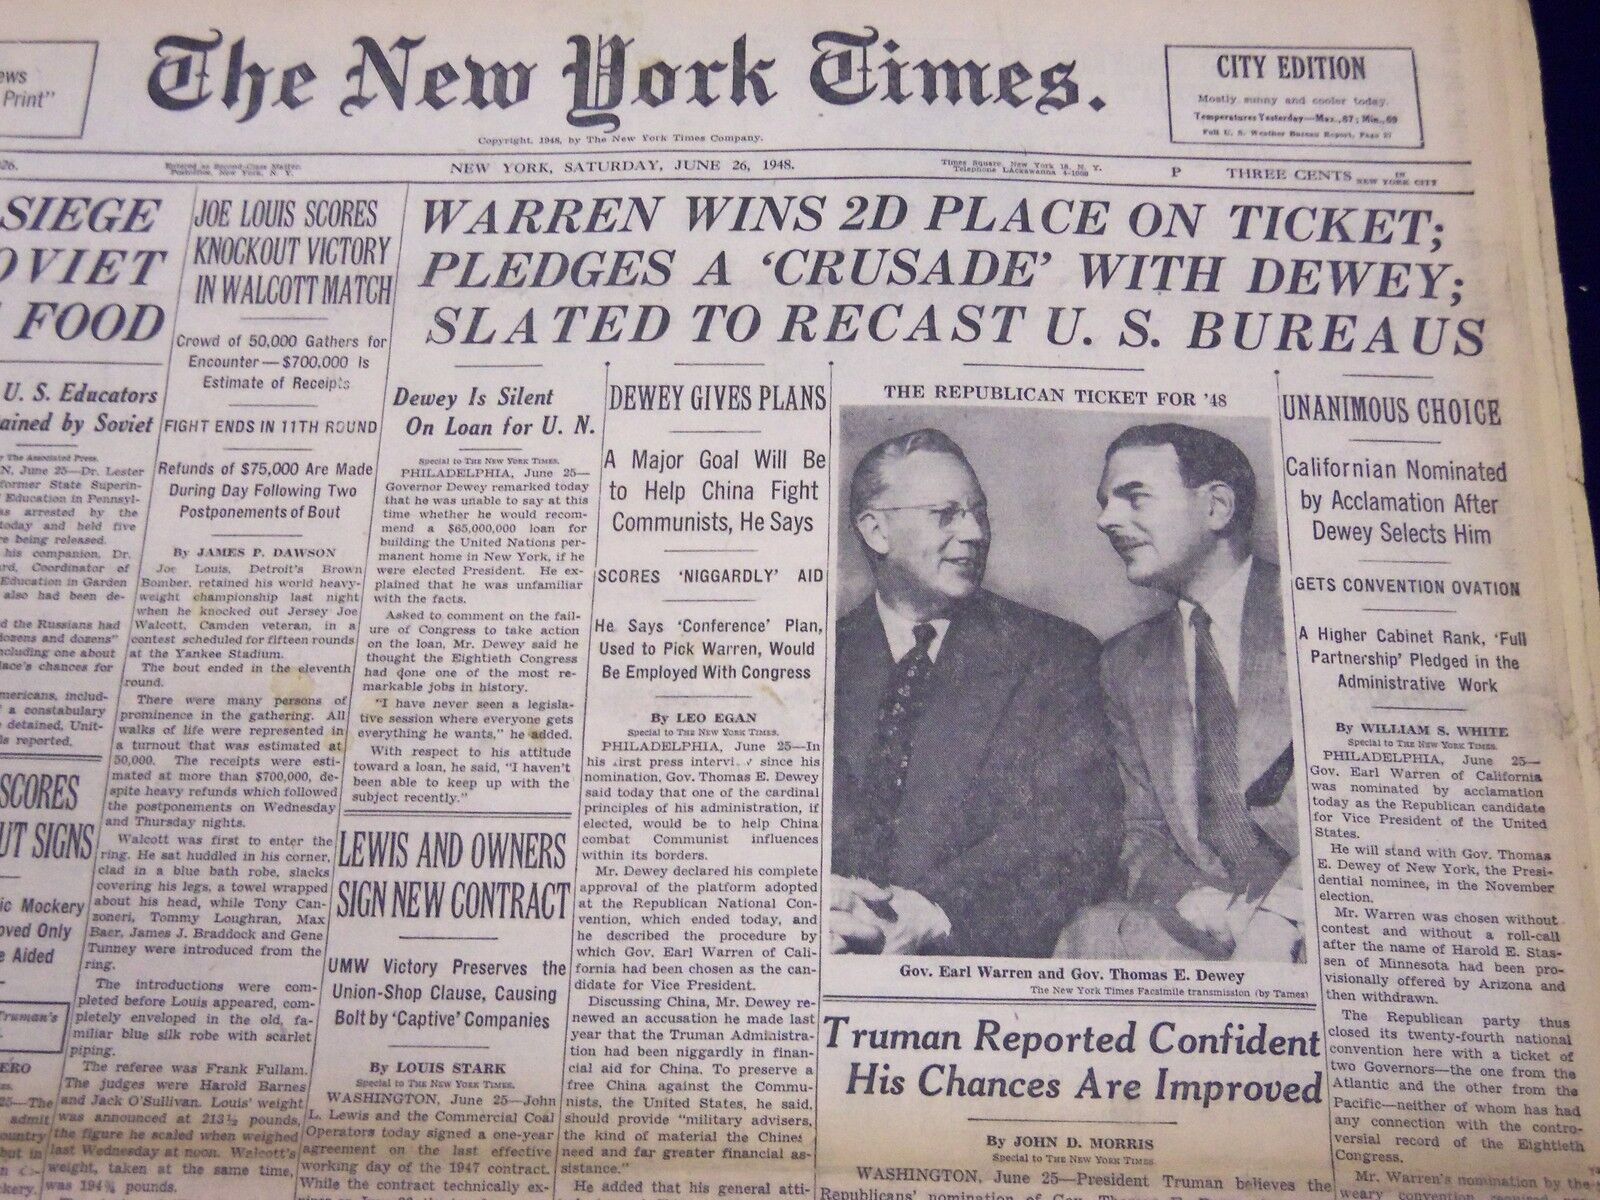 1948 JUNE 26 NEW YORK TIMES - WARREN WINS 2D PLACE - NT 134